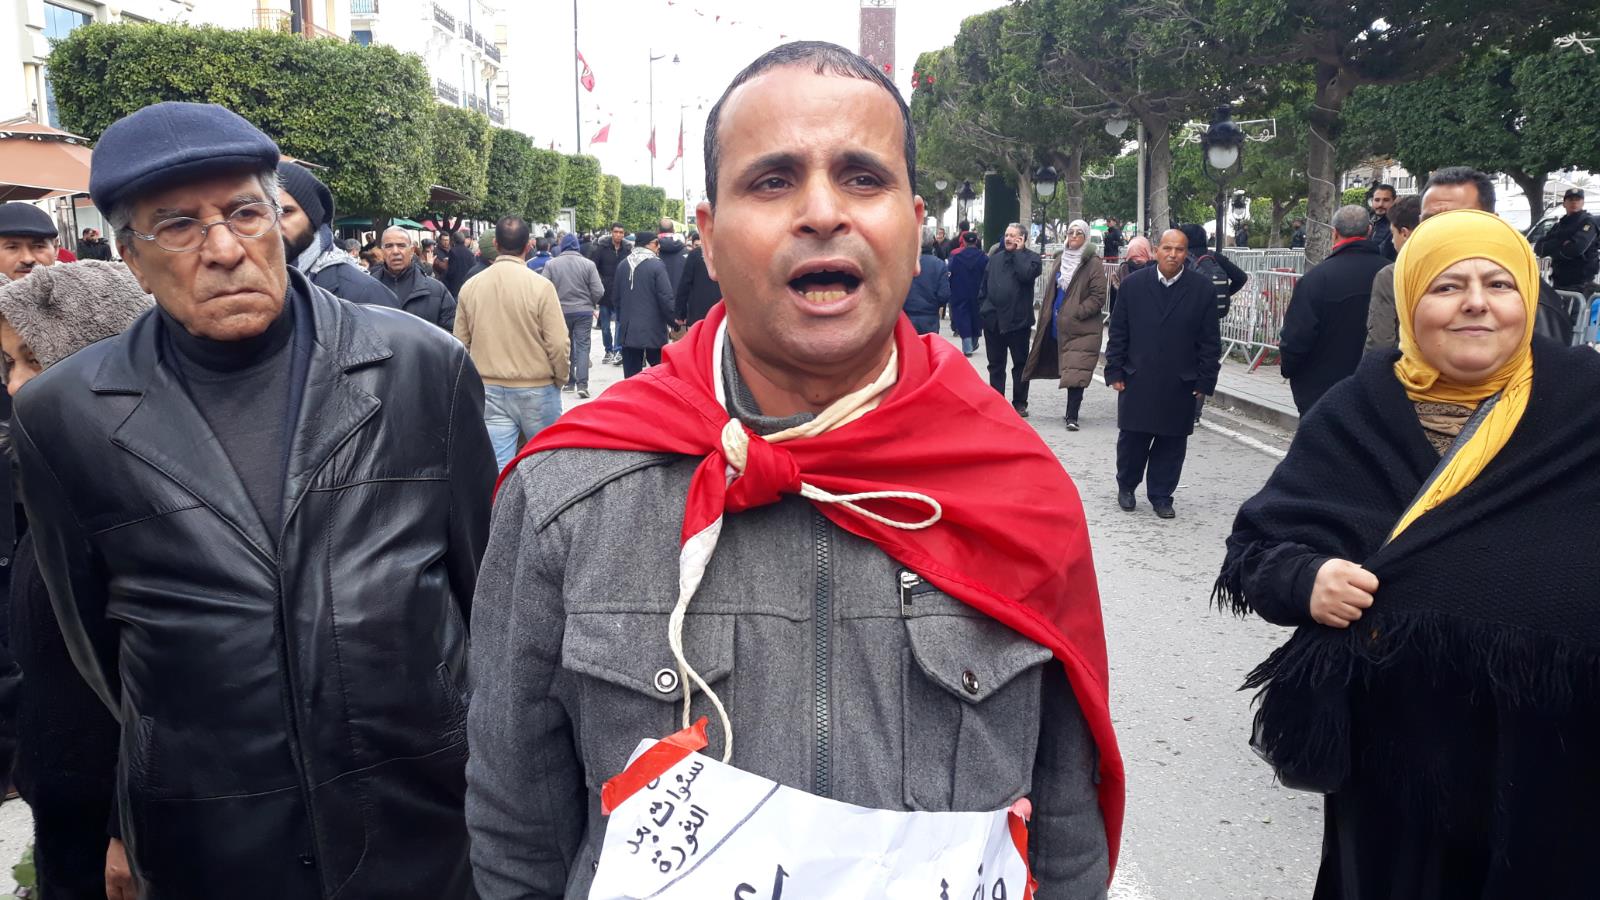 ‪كريم بالعربي: السياسيون أصبحوا يسوقون صورة سيئة عن تونس في الخارج‬ (الجزيرة)